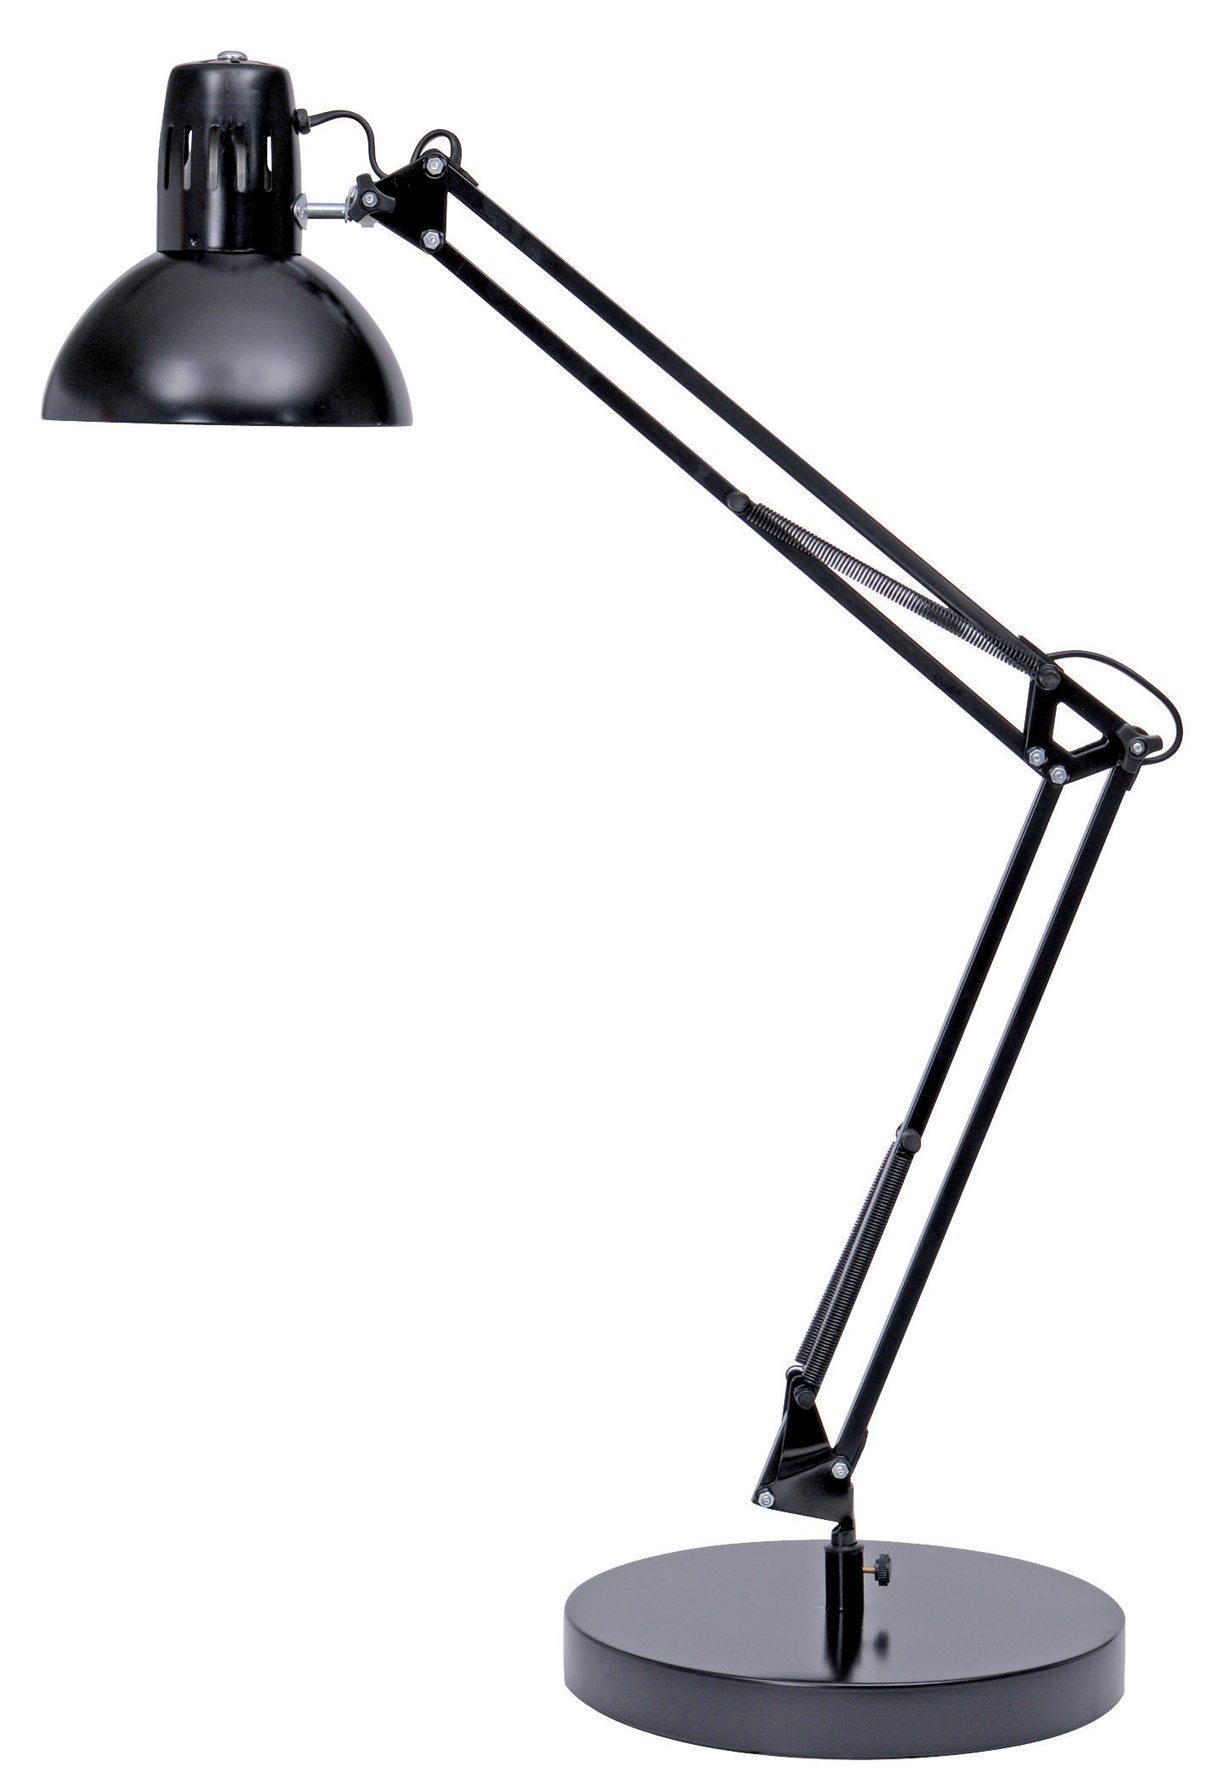 [2471345] Lampa Architect svart